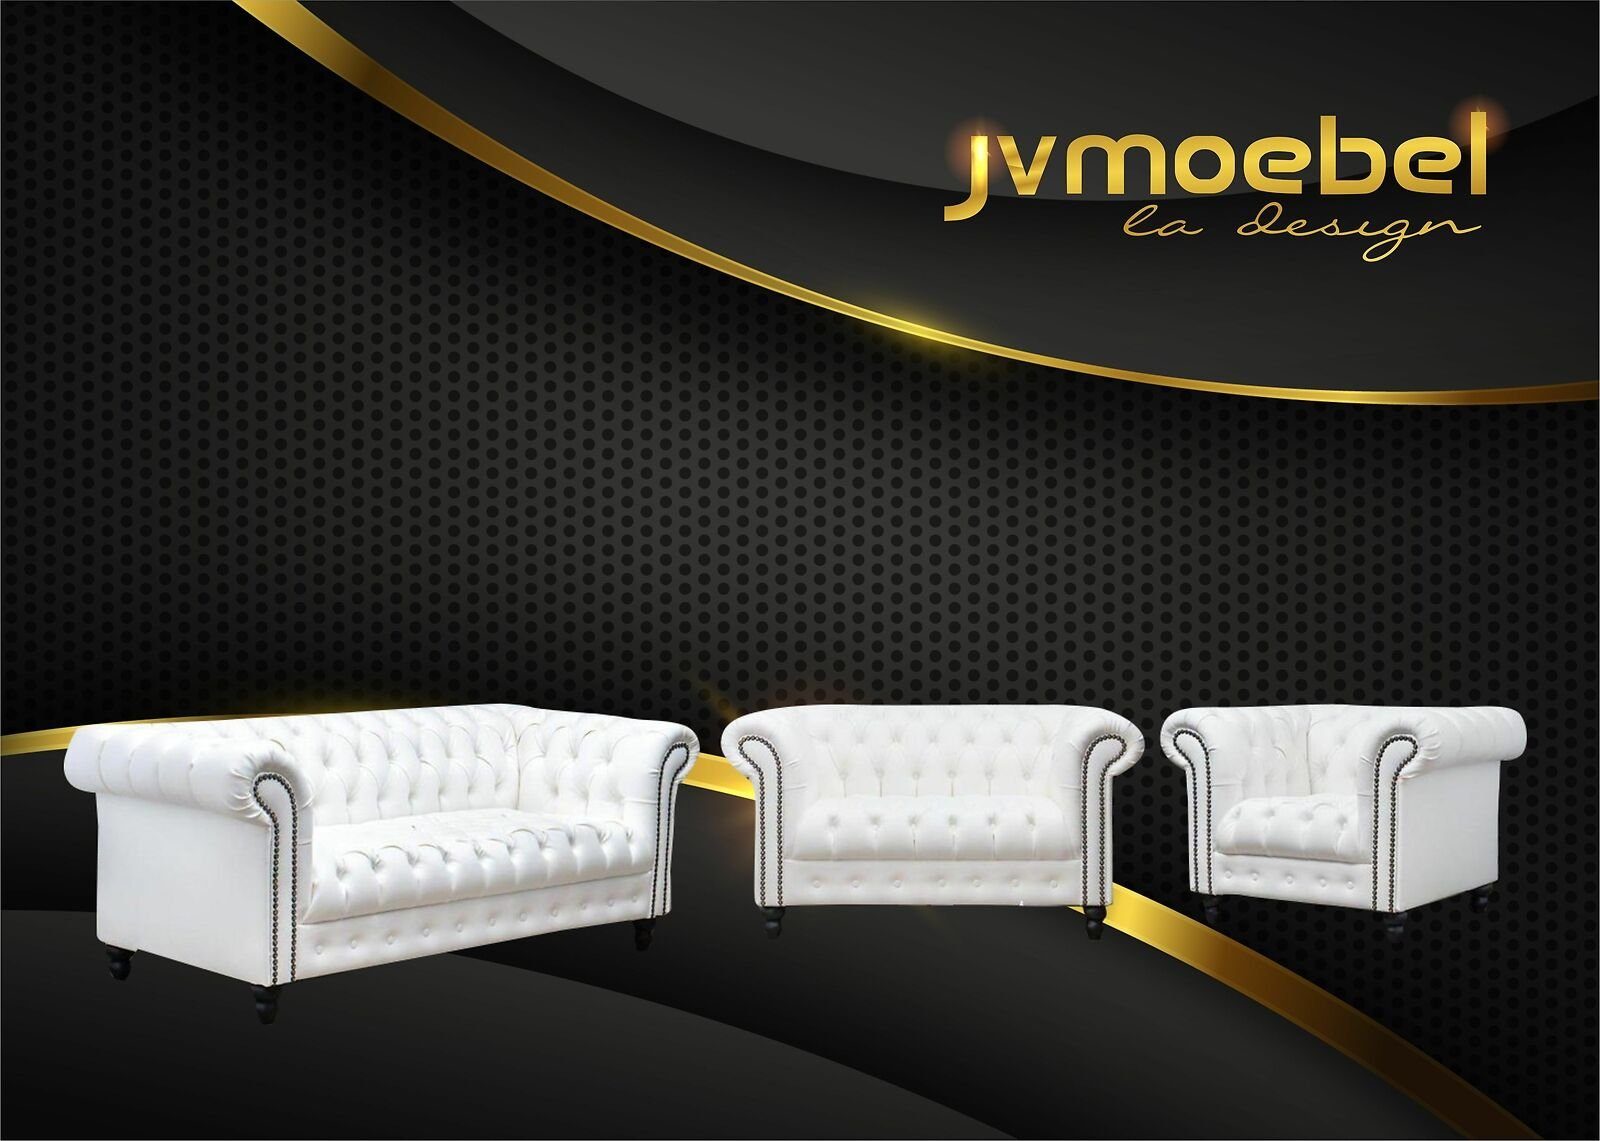 Weiß Nieten die JVmoebel Armlehne Sitzfläche Die Knöpfen mit verziert, Sofa, ist mit und Rückenlehne